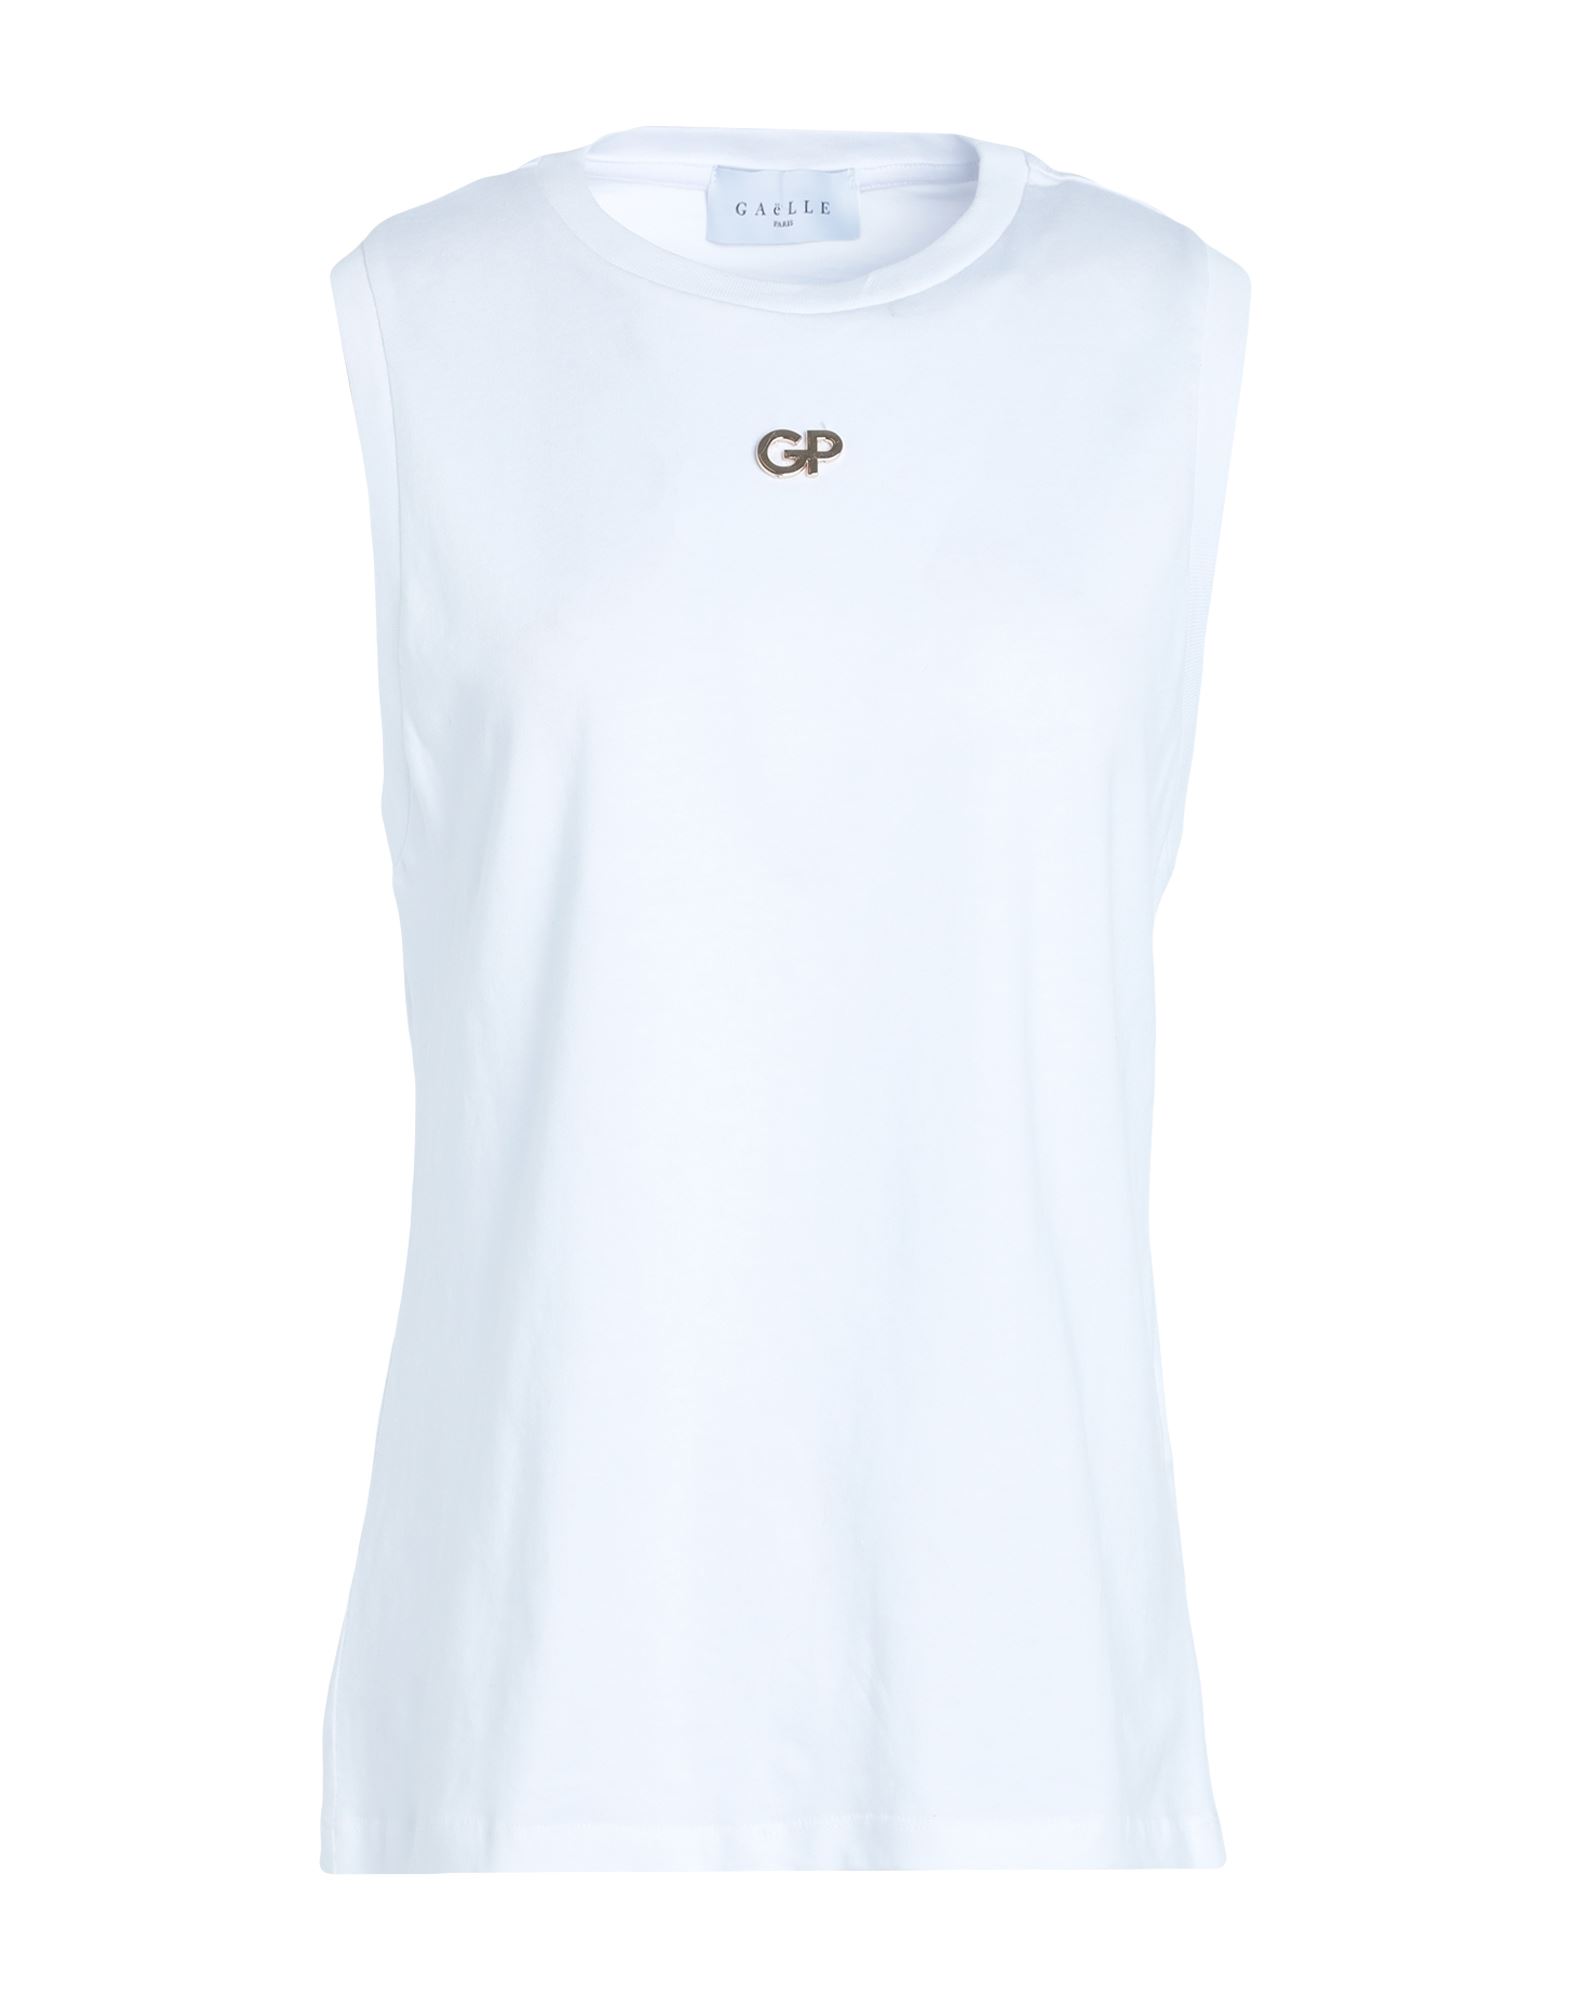 GAëLLE Paris T-shirts Damen Weiß von GAëLLE Paris